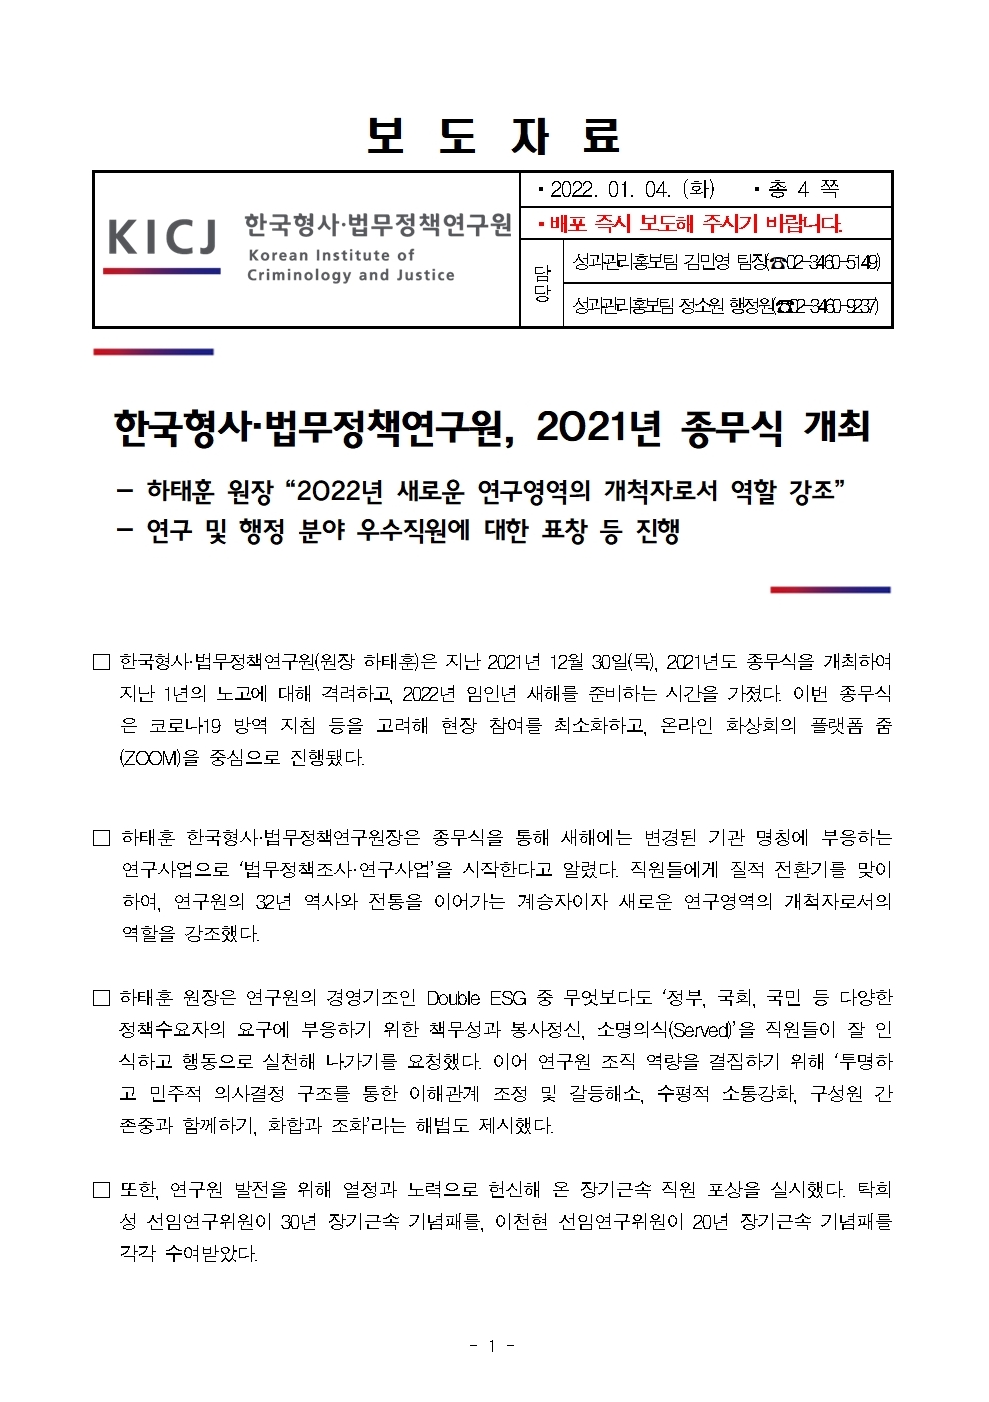 한국형사·법무정책연구원 보도자료 한국형사·법무정책연구원 2021년 종무식 개최 : 자세한 내용은 하단 pdf참조